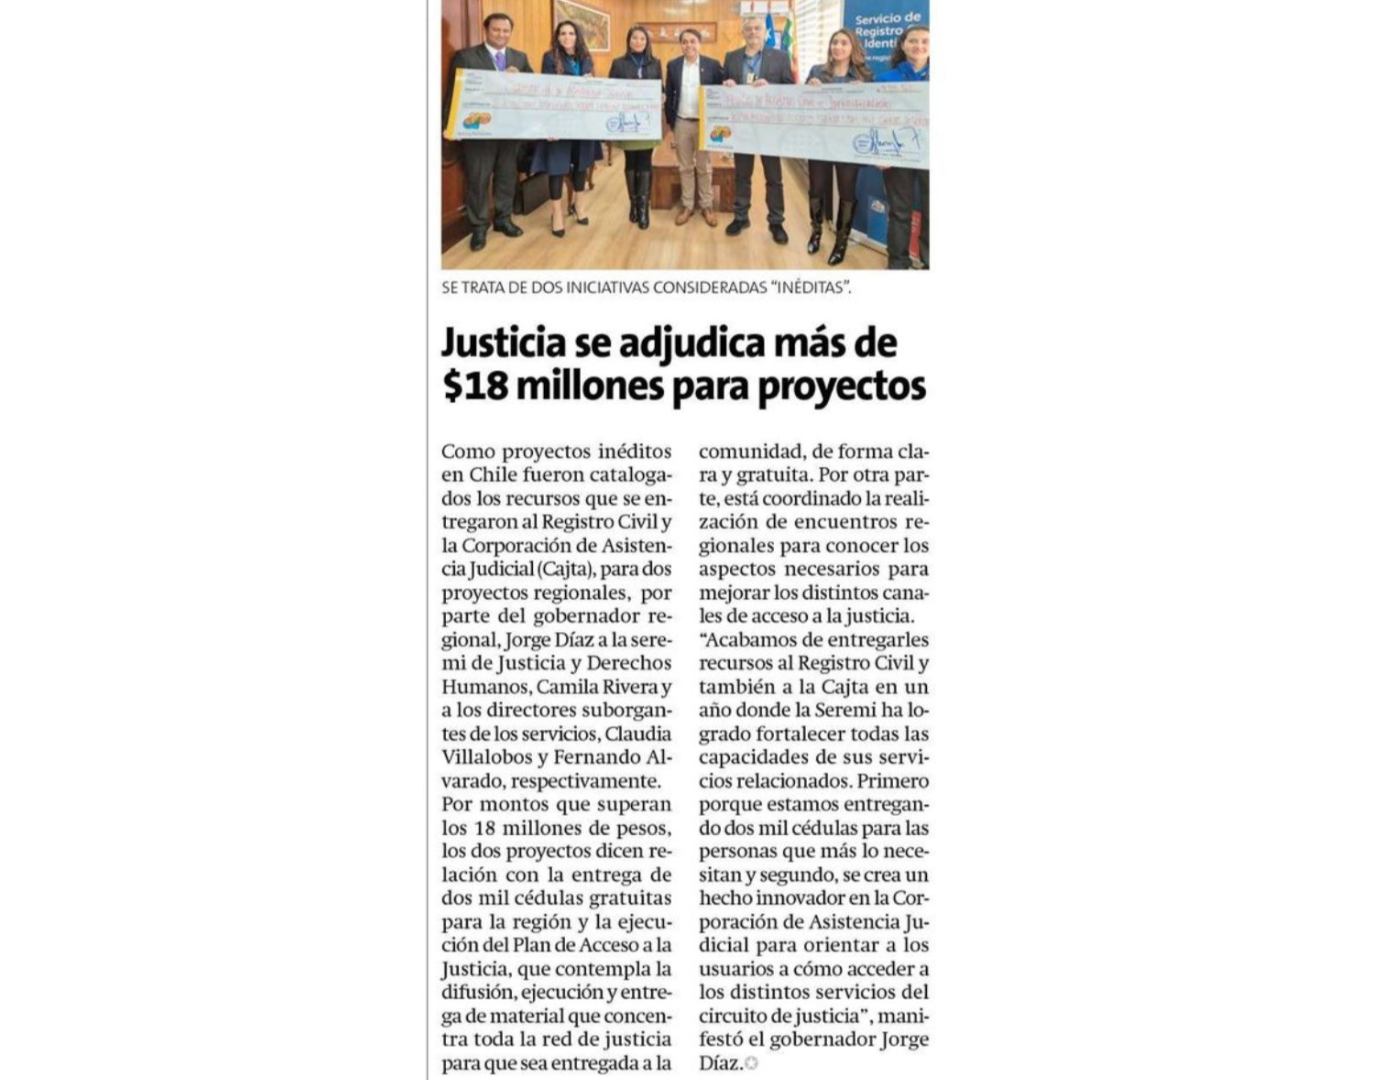 Diario la Estrella de Arica: informan sobre proyecto de CAJTA de Arica y Parinacota